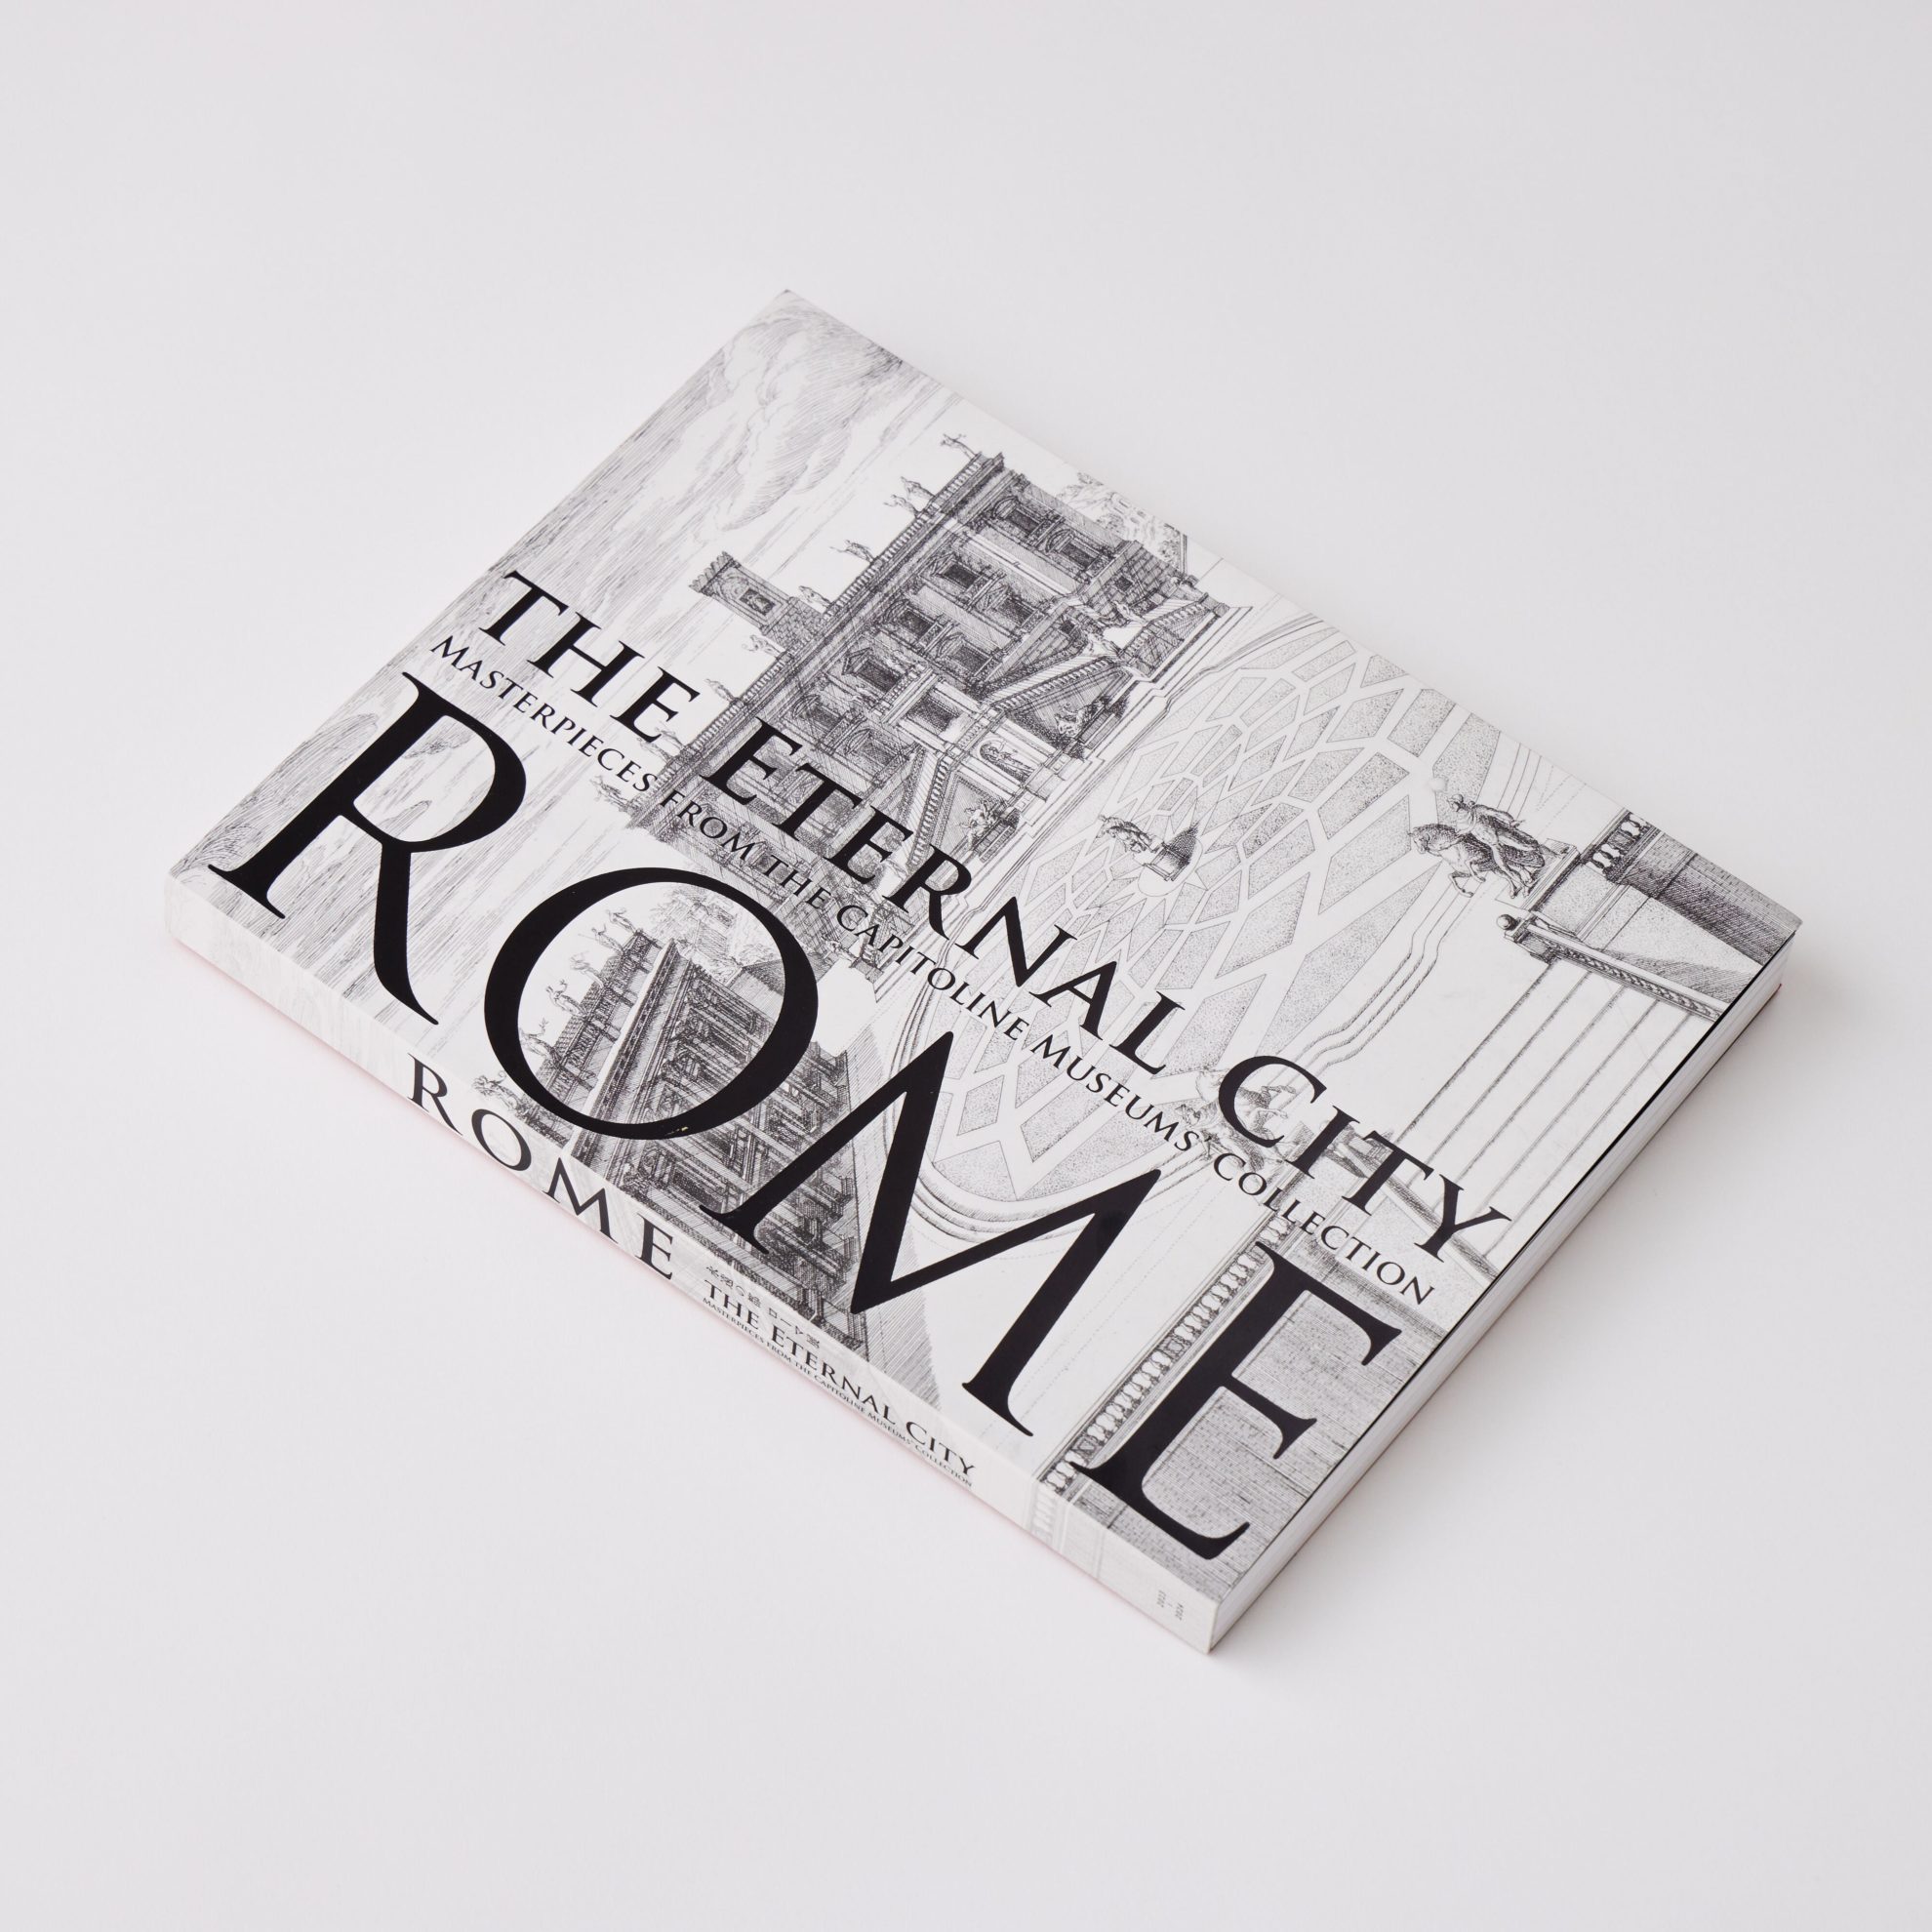 「永遠の都ローマ展」公式図録